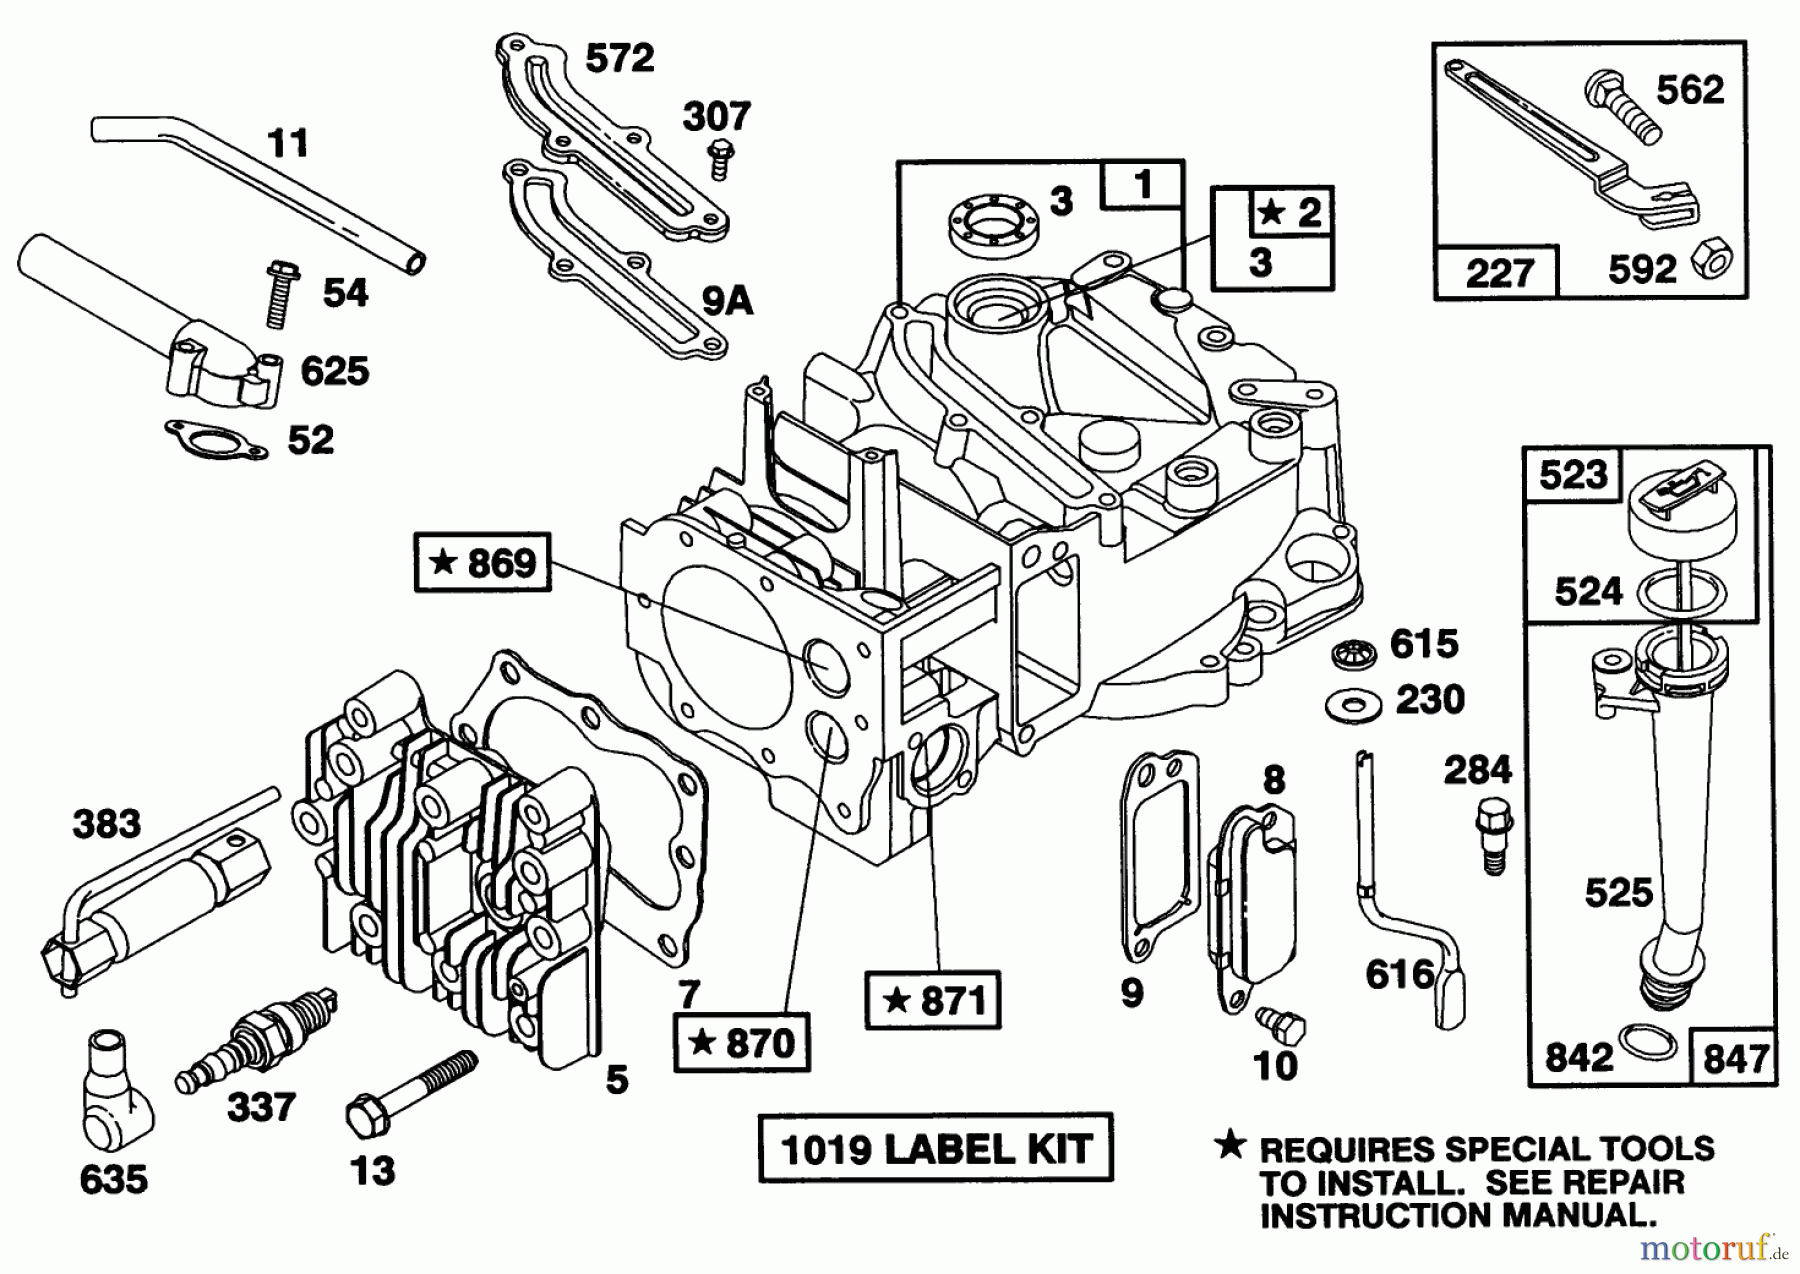  Toro Neu Mowers, Walk-Behind Seite 1 20212 - Toro Lawnmower, 1991 (1000001-1999999) ENGINE BRIGGS & STRATTON MODEL 122702-3188-01 #1